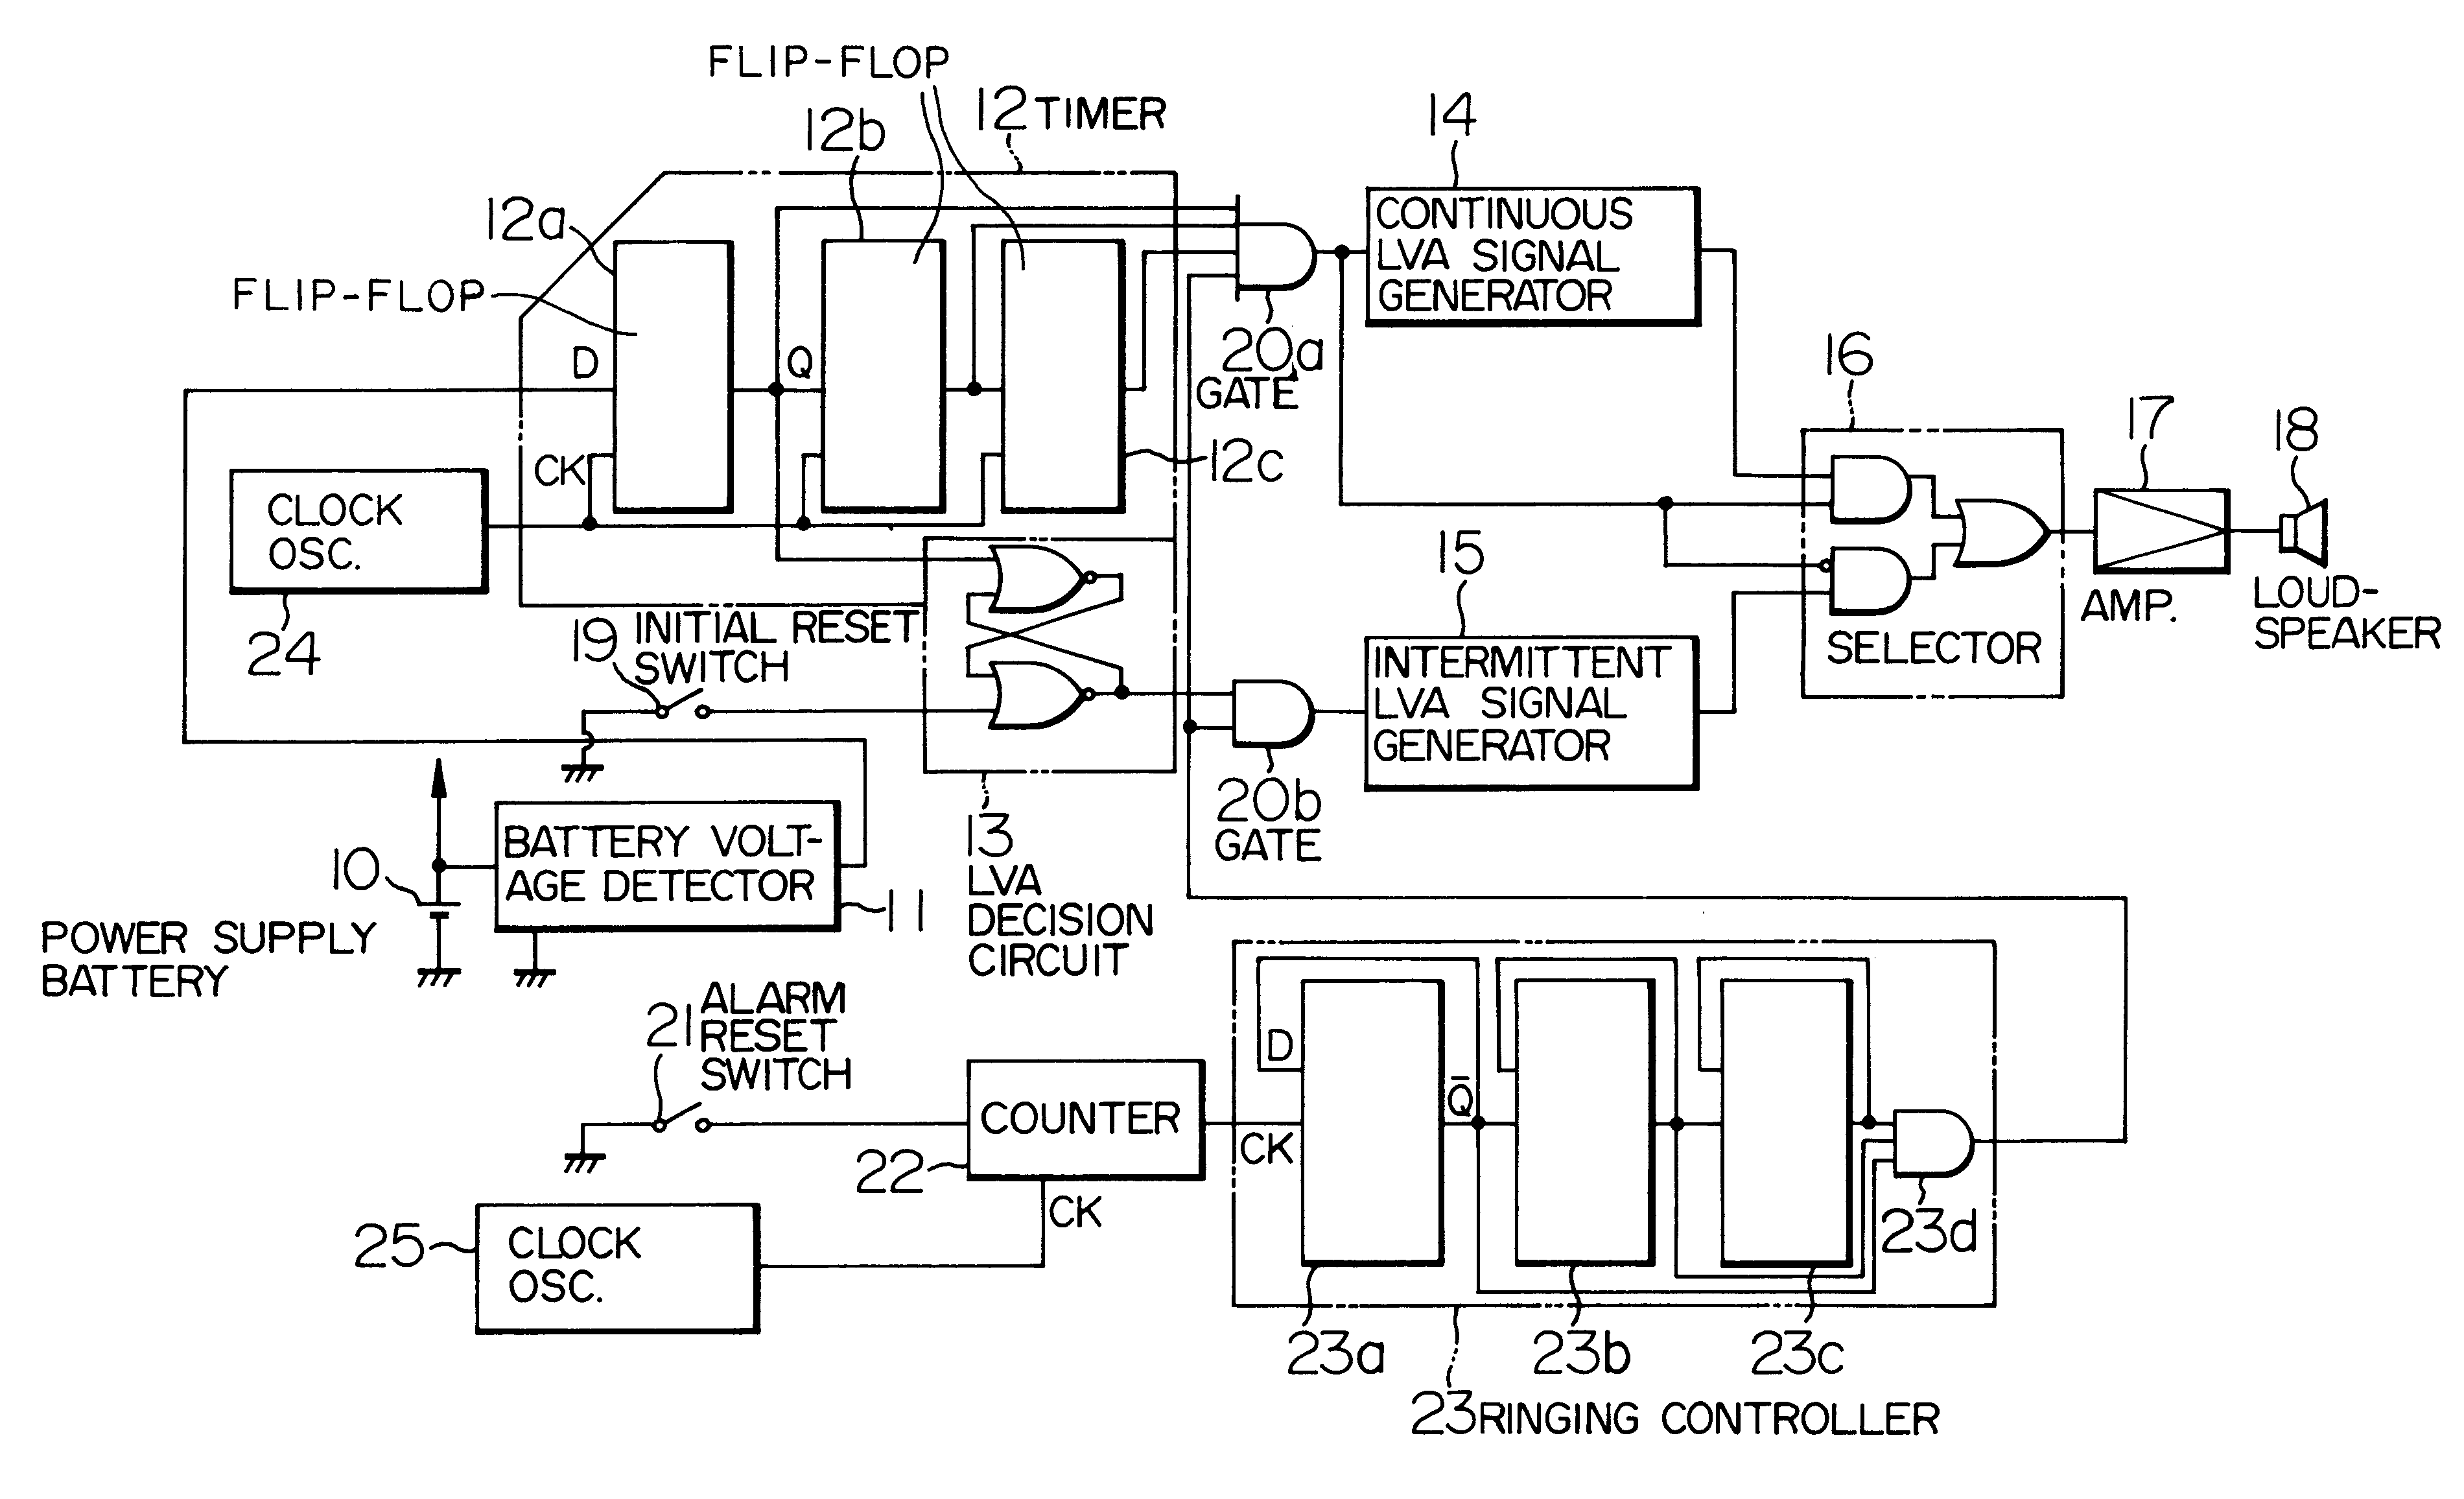 Battery voltage alarm apparatus